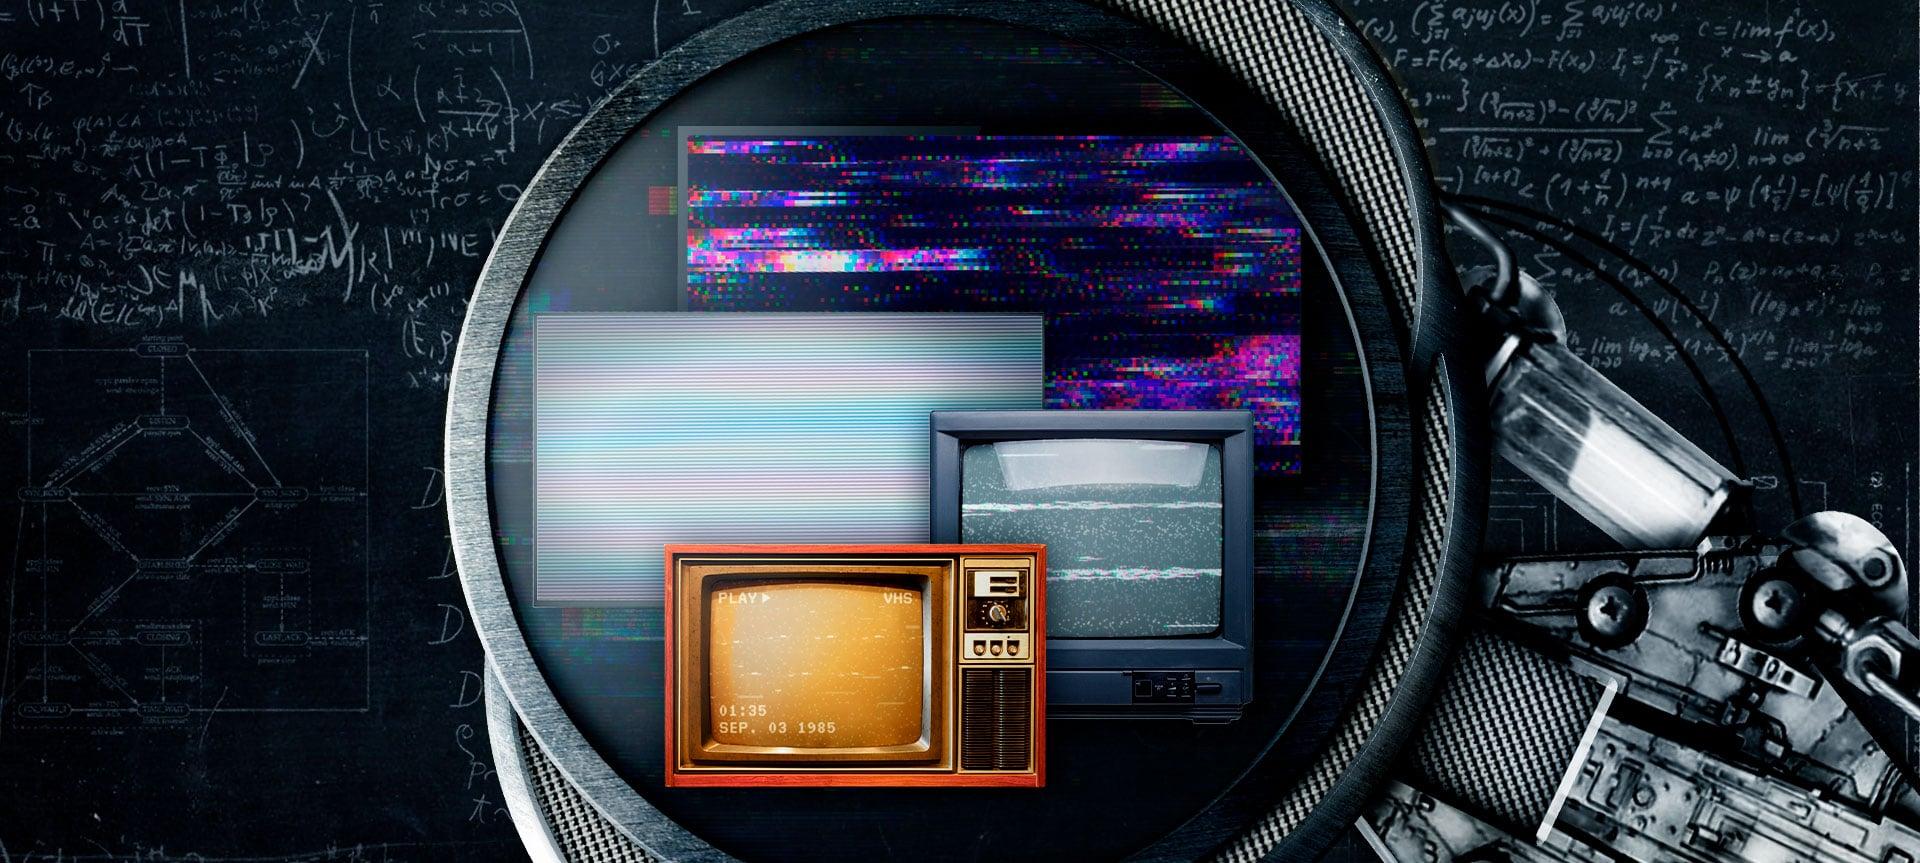 Da TV de Tubo à OLED - A evolução das TVs